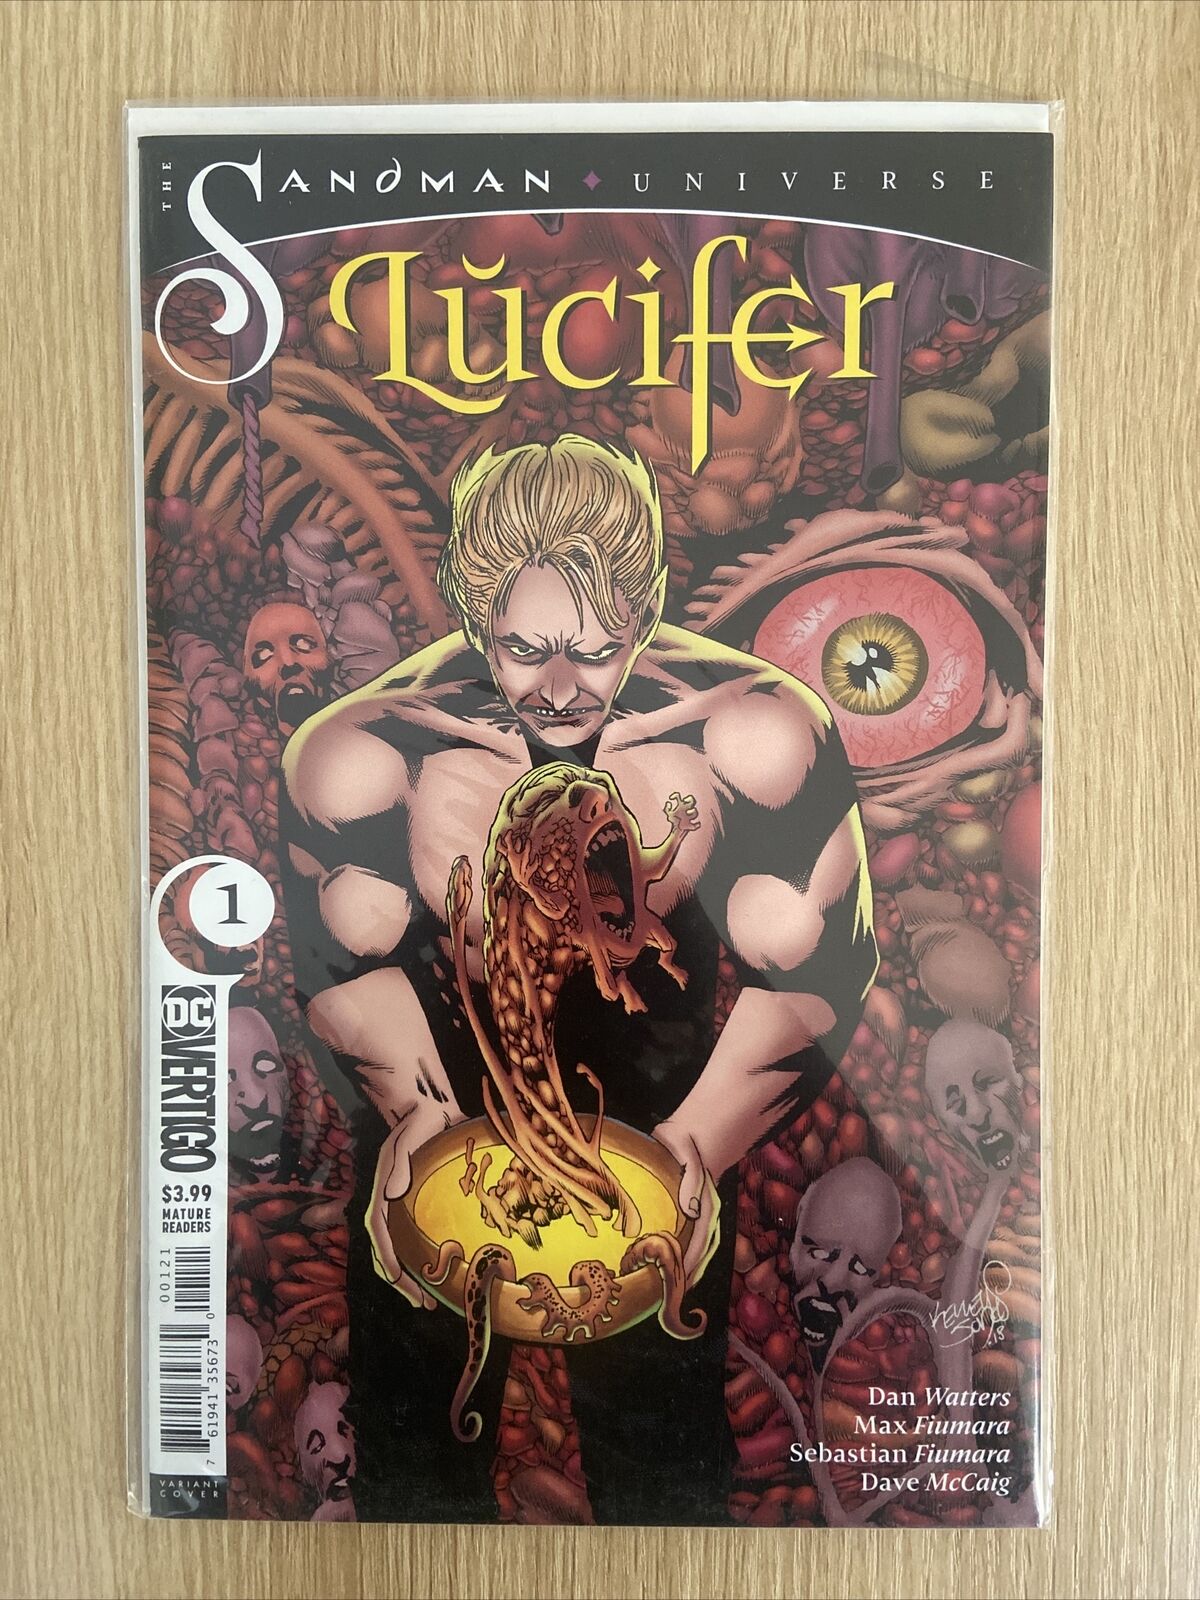 Lucifer #1 2018 DC Vertigo Sandman Universe Variant Cover Key Issue